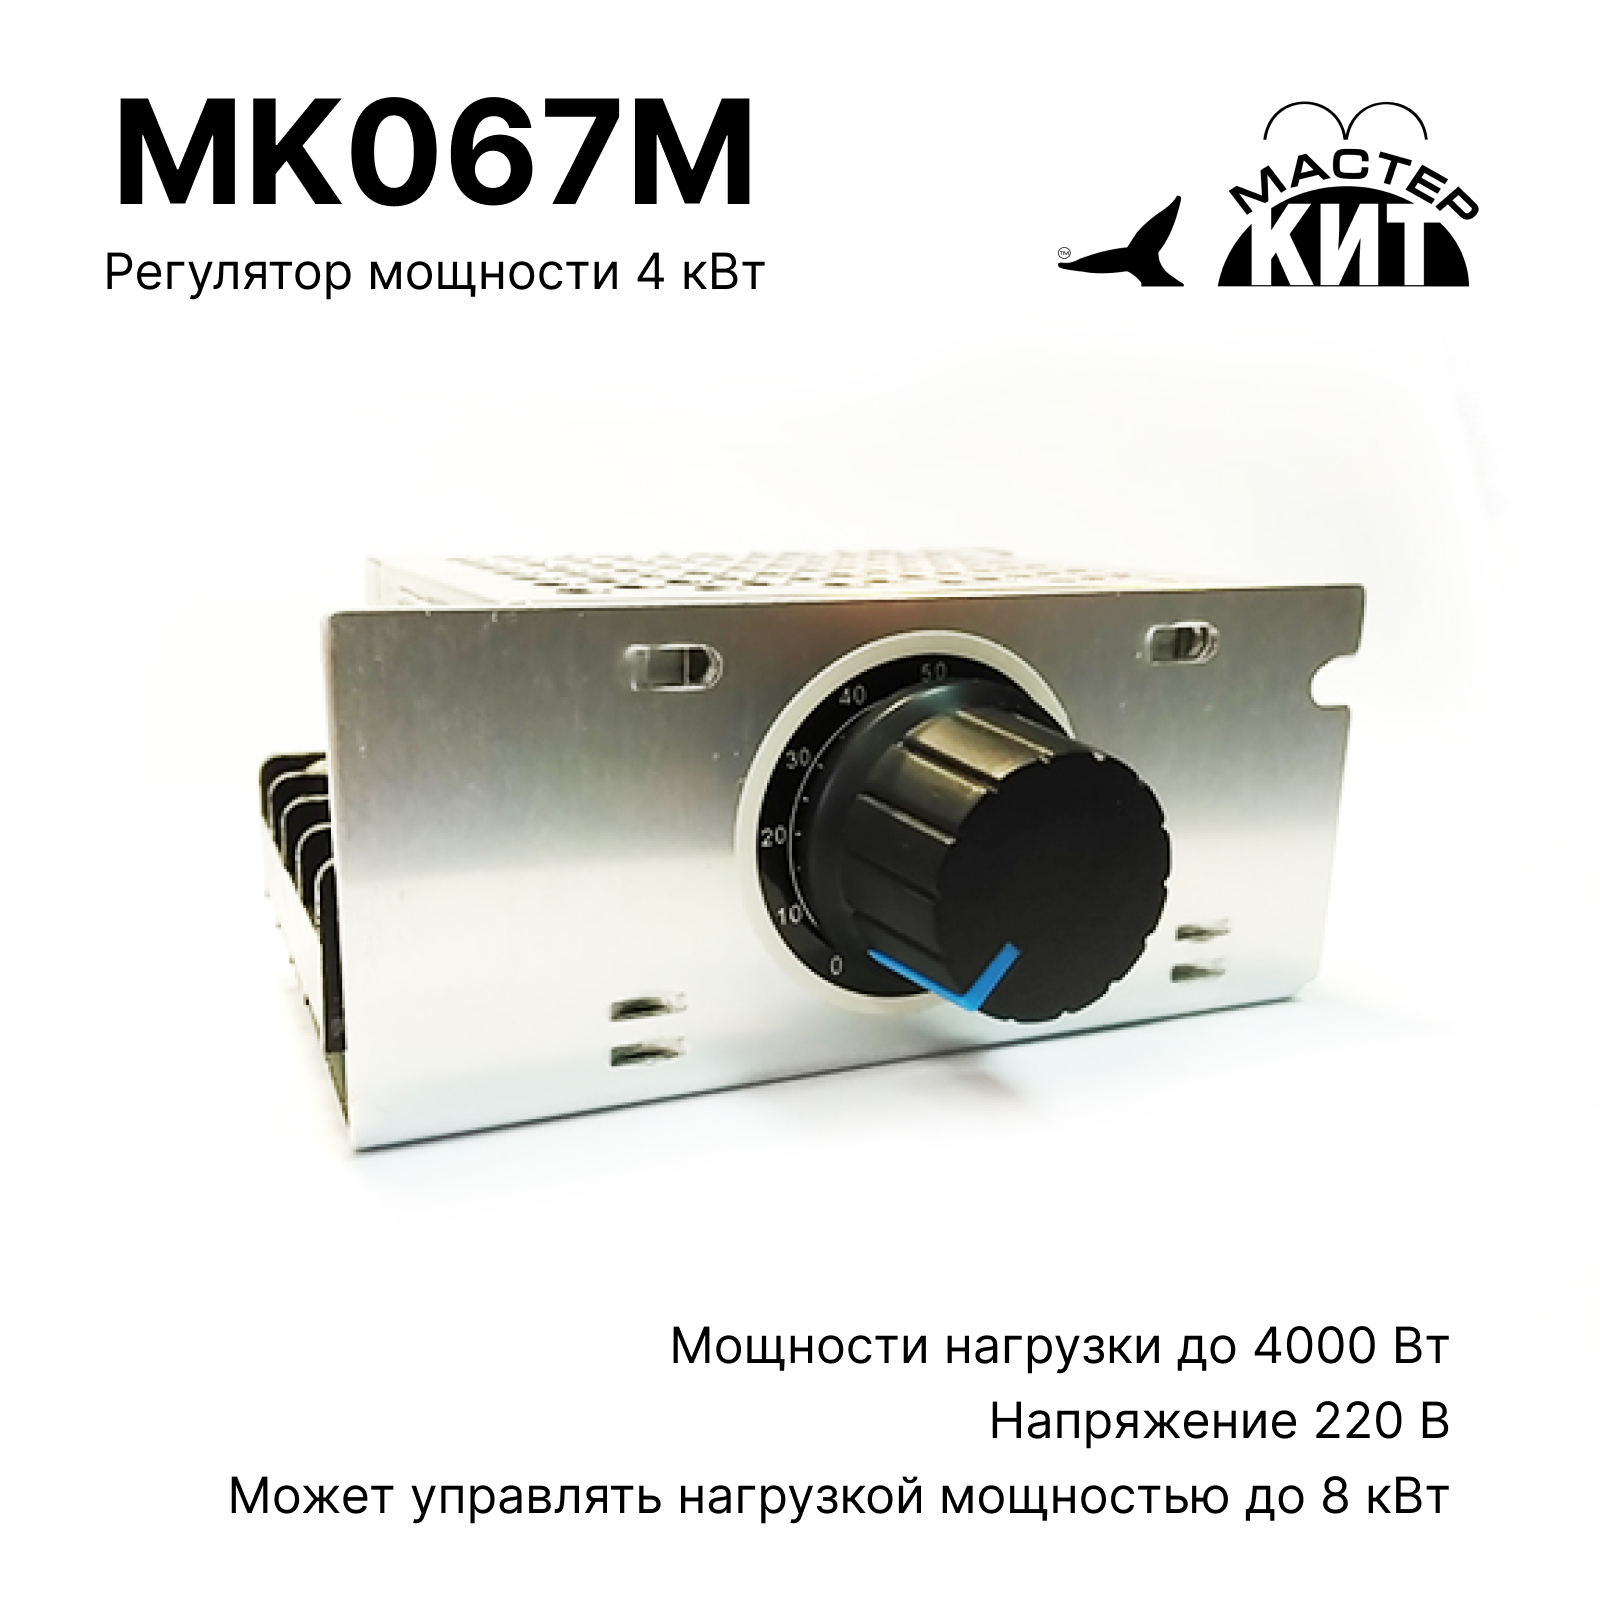 Регулятор мощности Мастер Кит MK067M 4 кВт (в корпусе с радиатором, 220В, 18А) регулятор fubag r 4000 1 2 190180